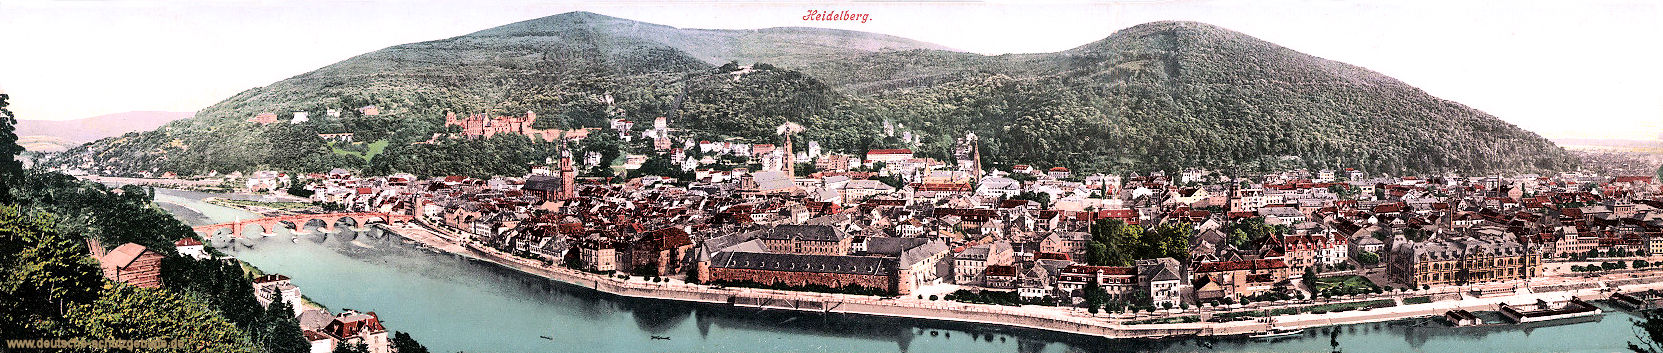 Heidelberg, Panorama